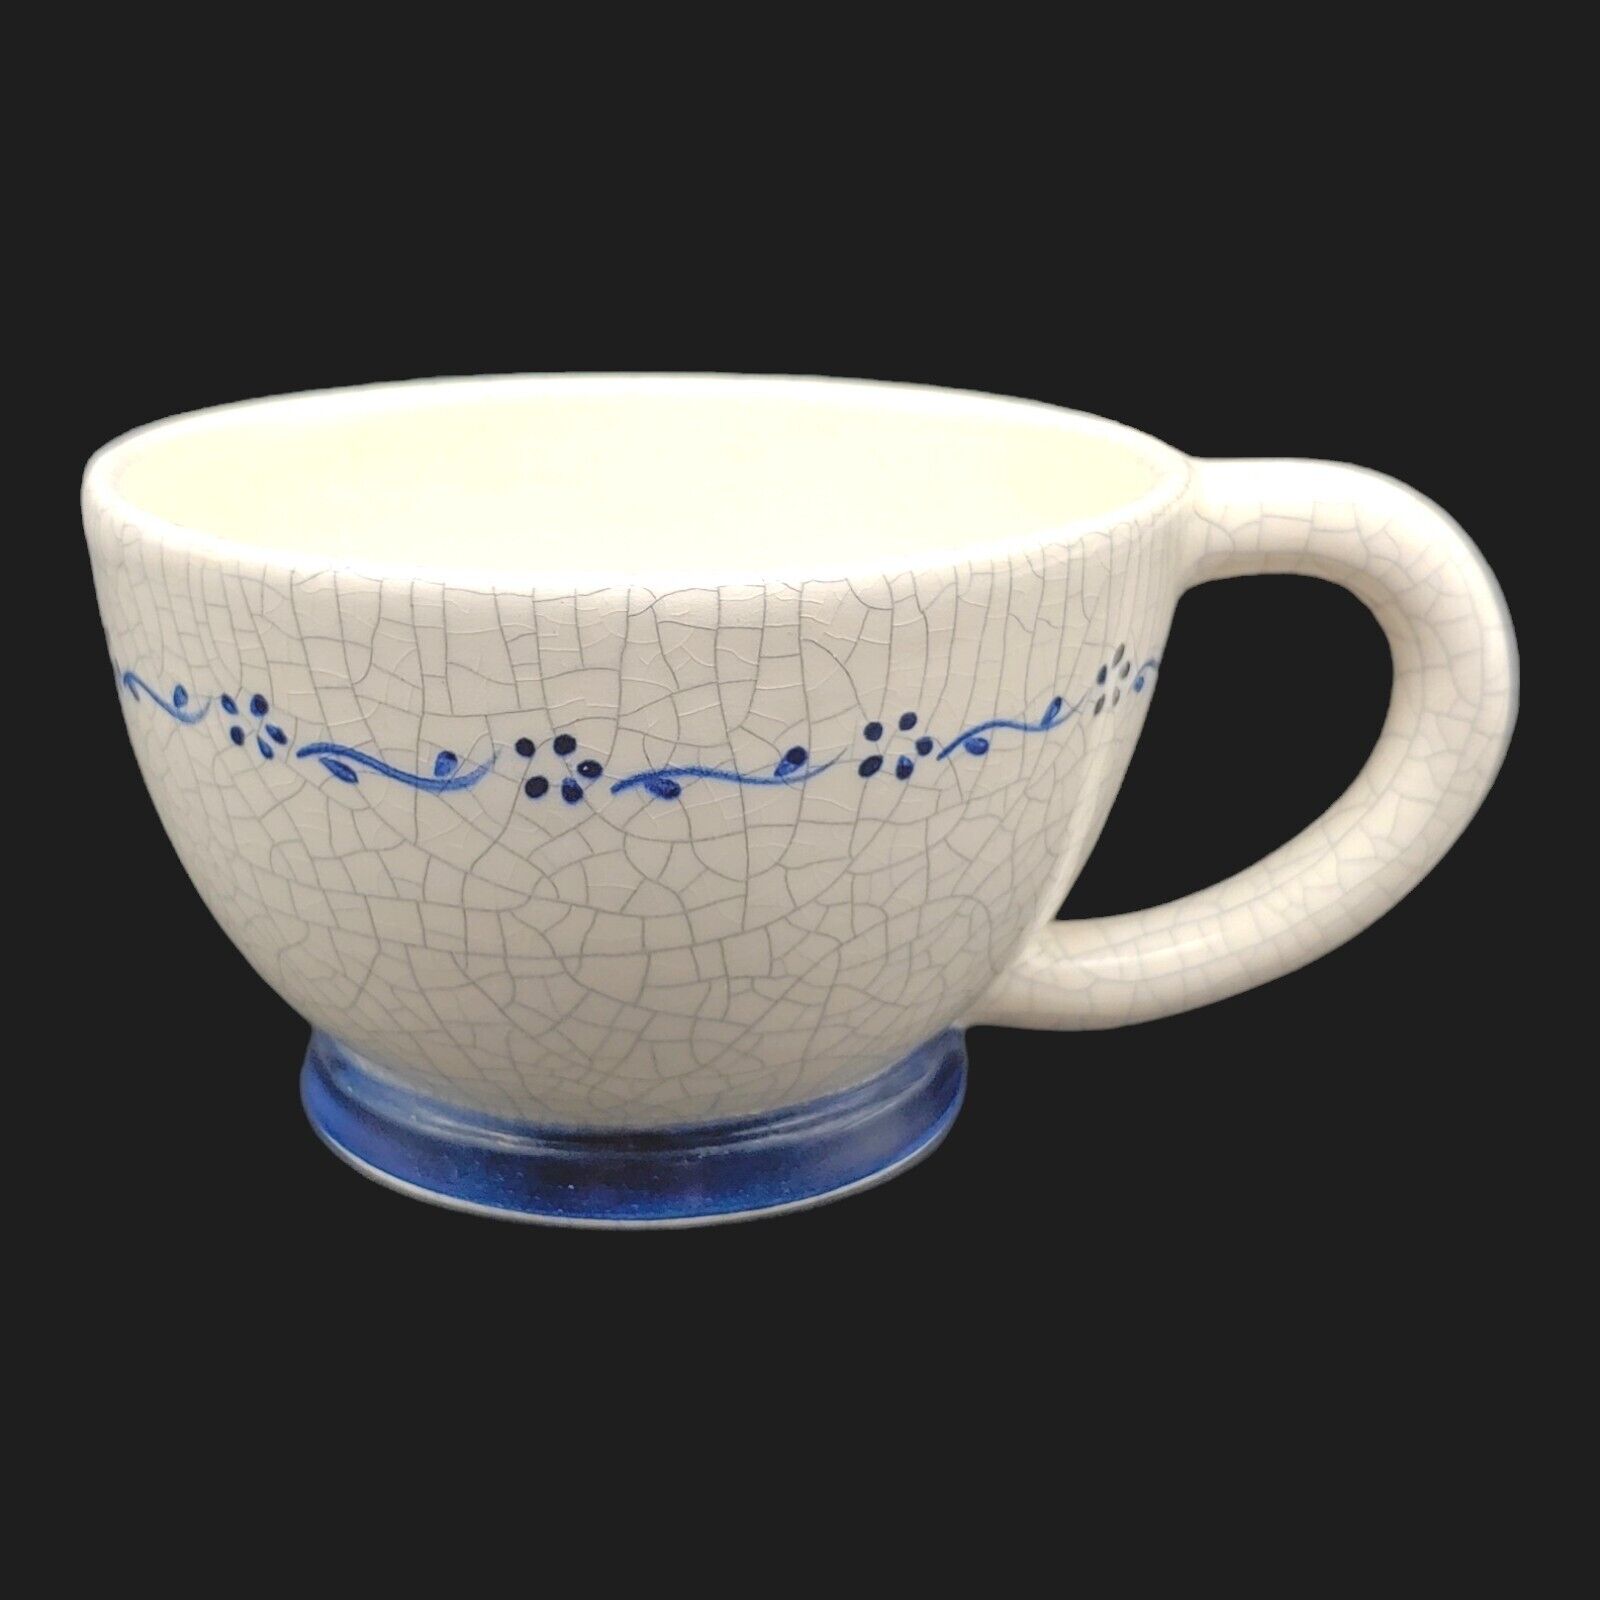 Dedham Pottery The Potting Shed Tea Coffee Mug - 8oz Blue White Crackle Glaze